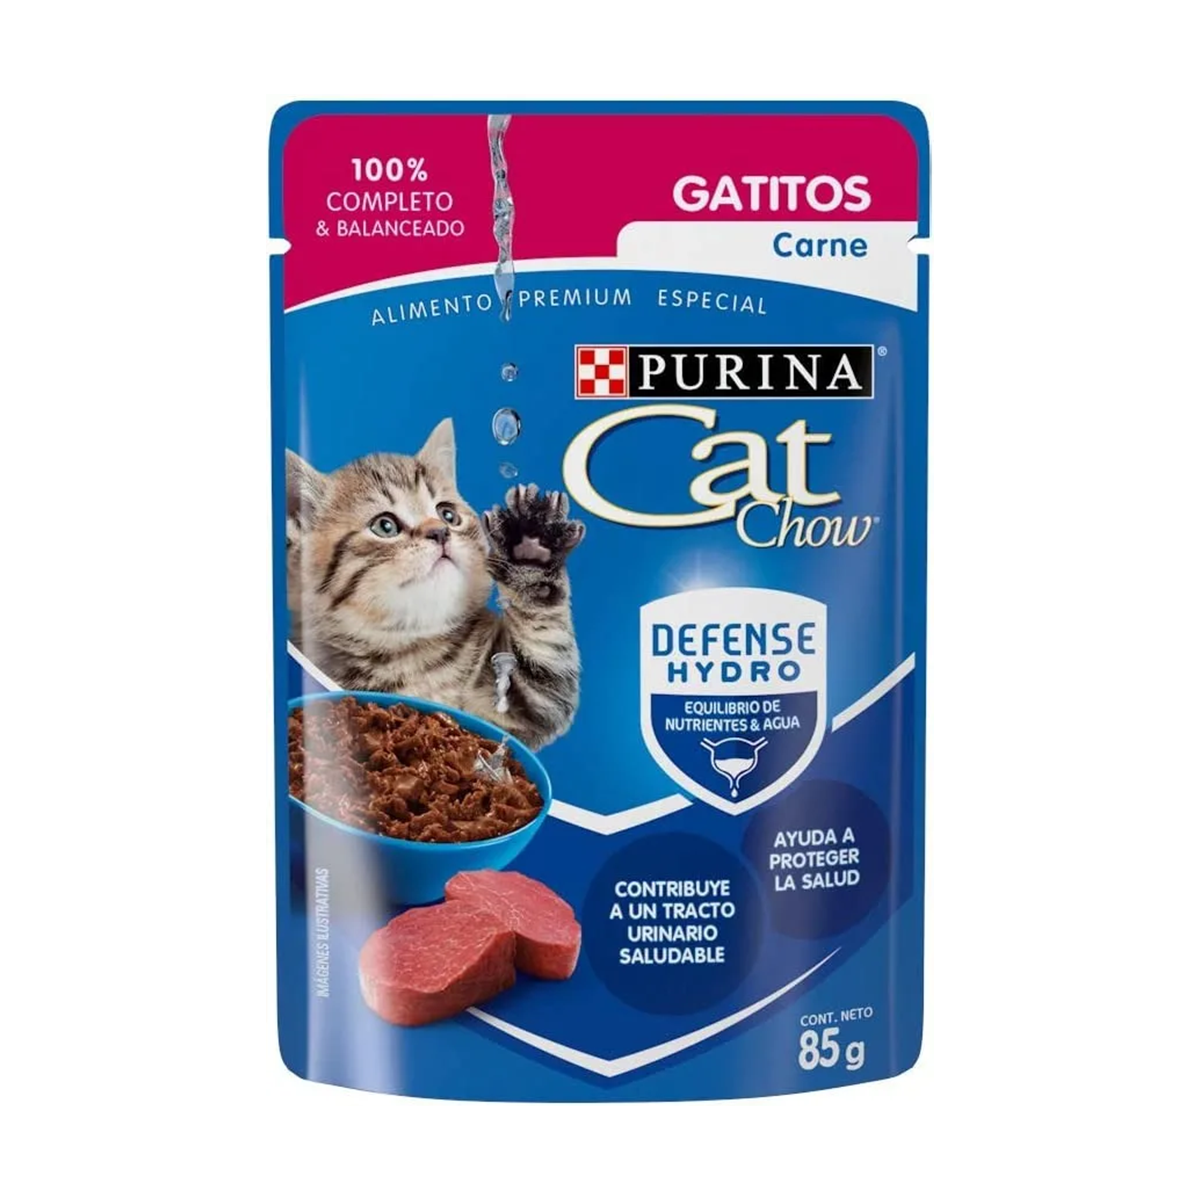 Purina-CatChow-gatitos-carne01.png